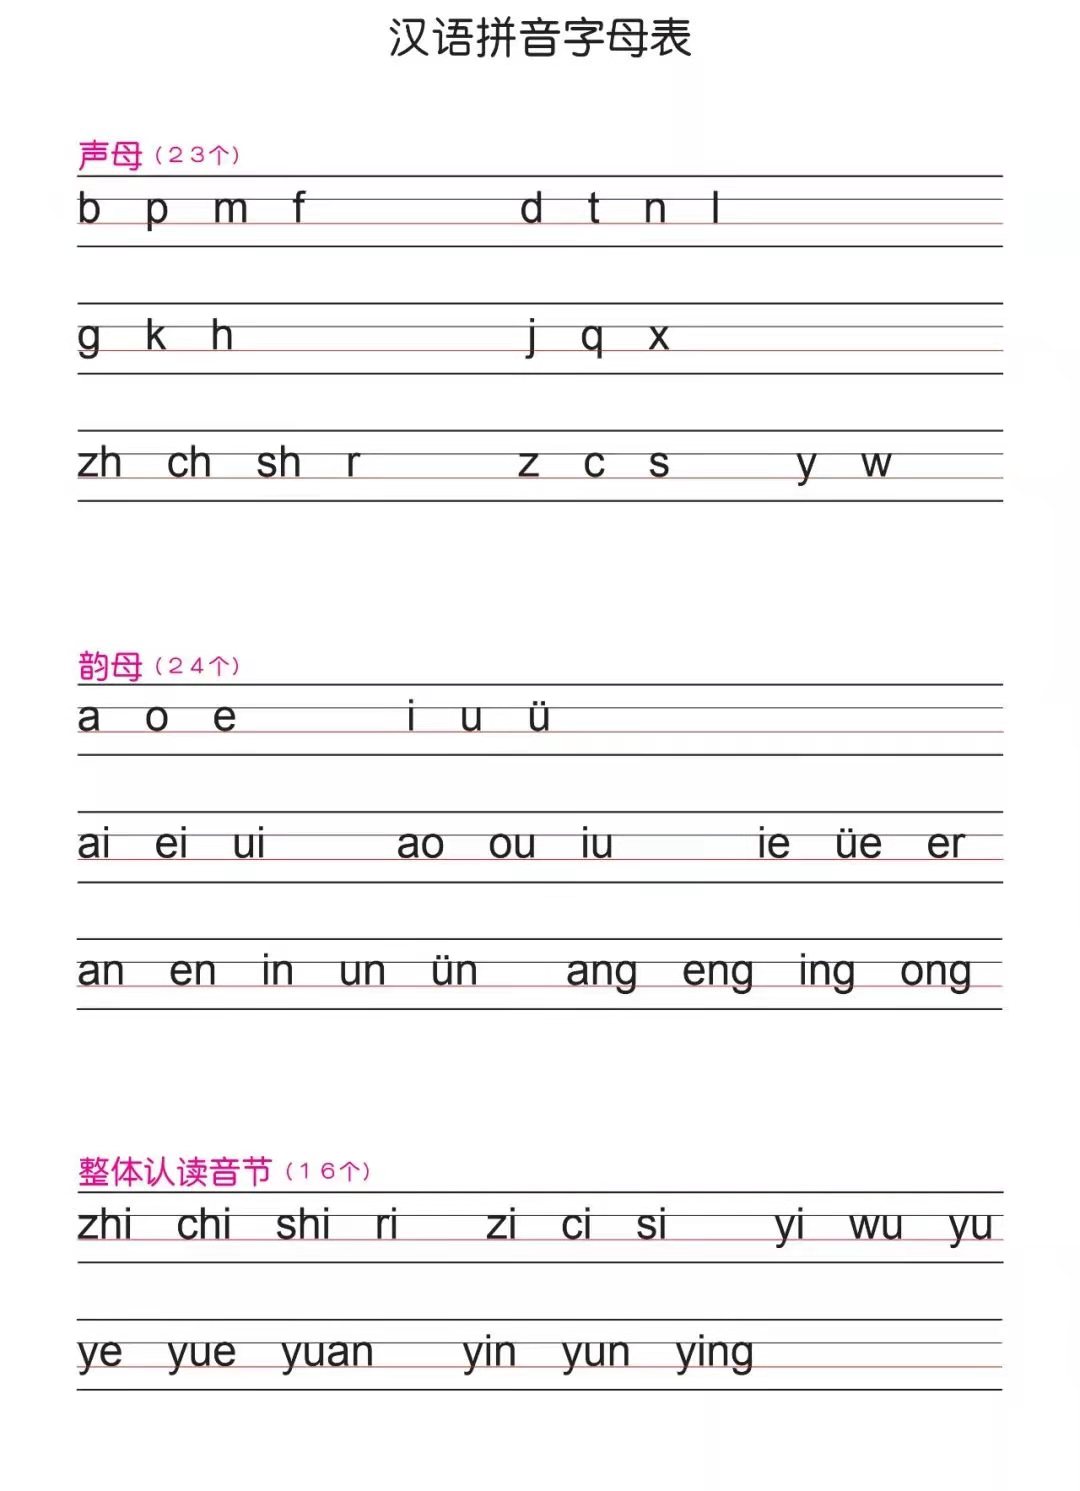 家长朋友可以先看一下《汉语拼音字母表》(下图),从整体上把握一下.